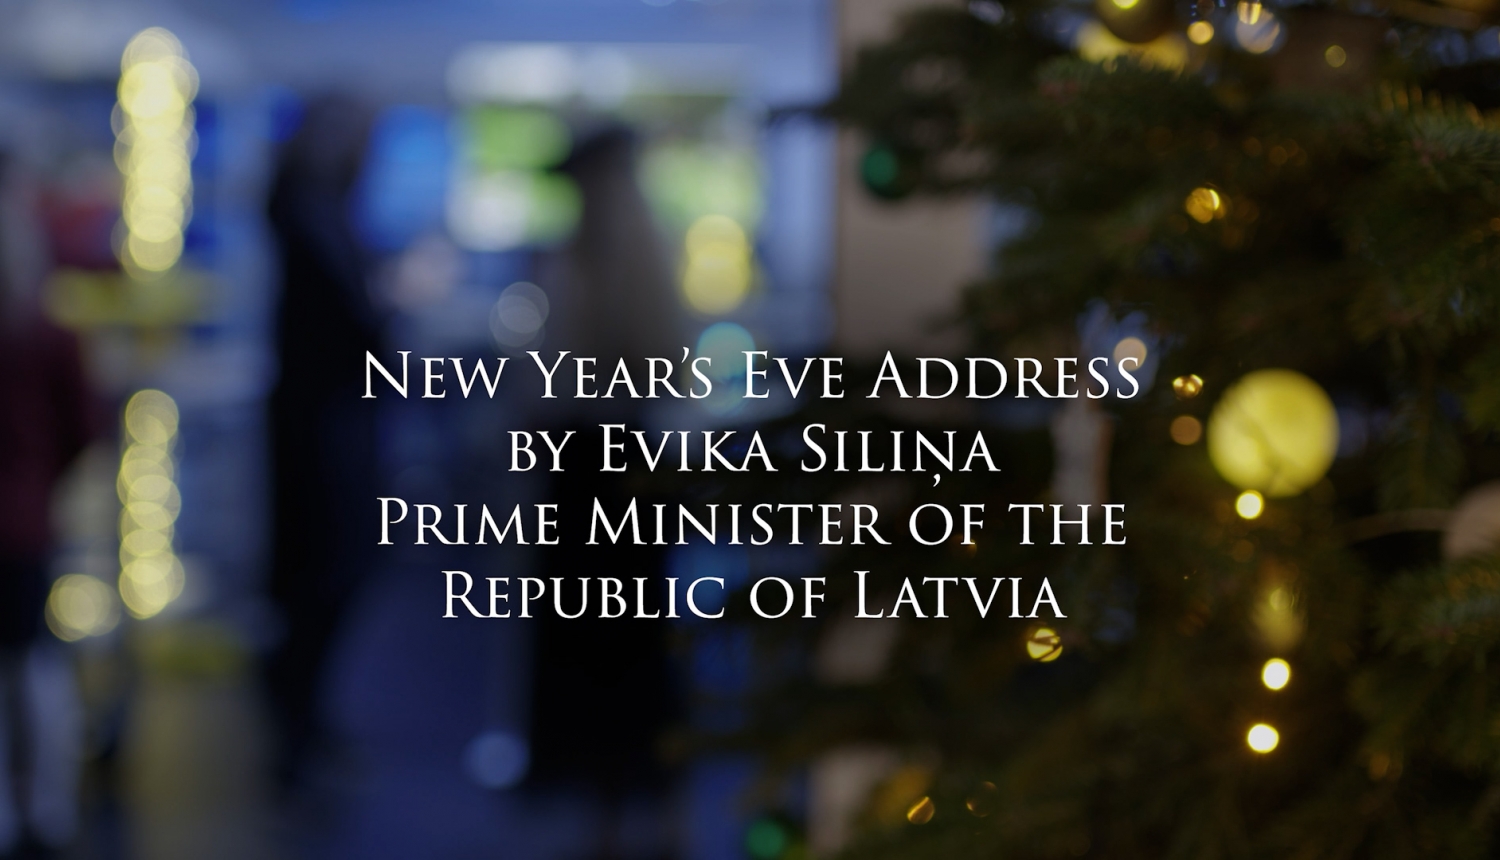 New Year's Eve Address by Evika Siliņa